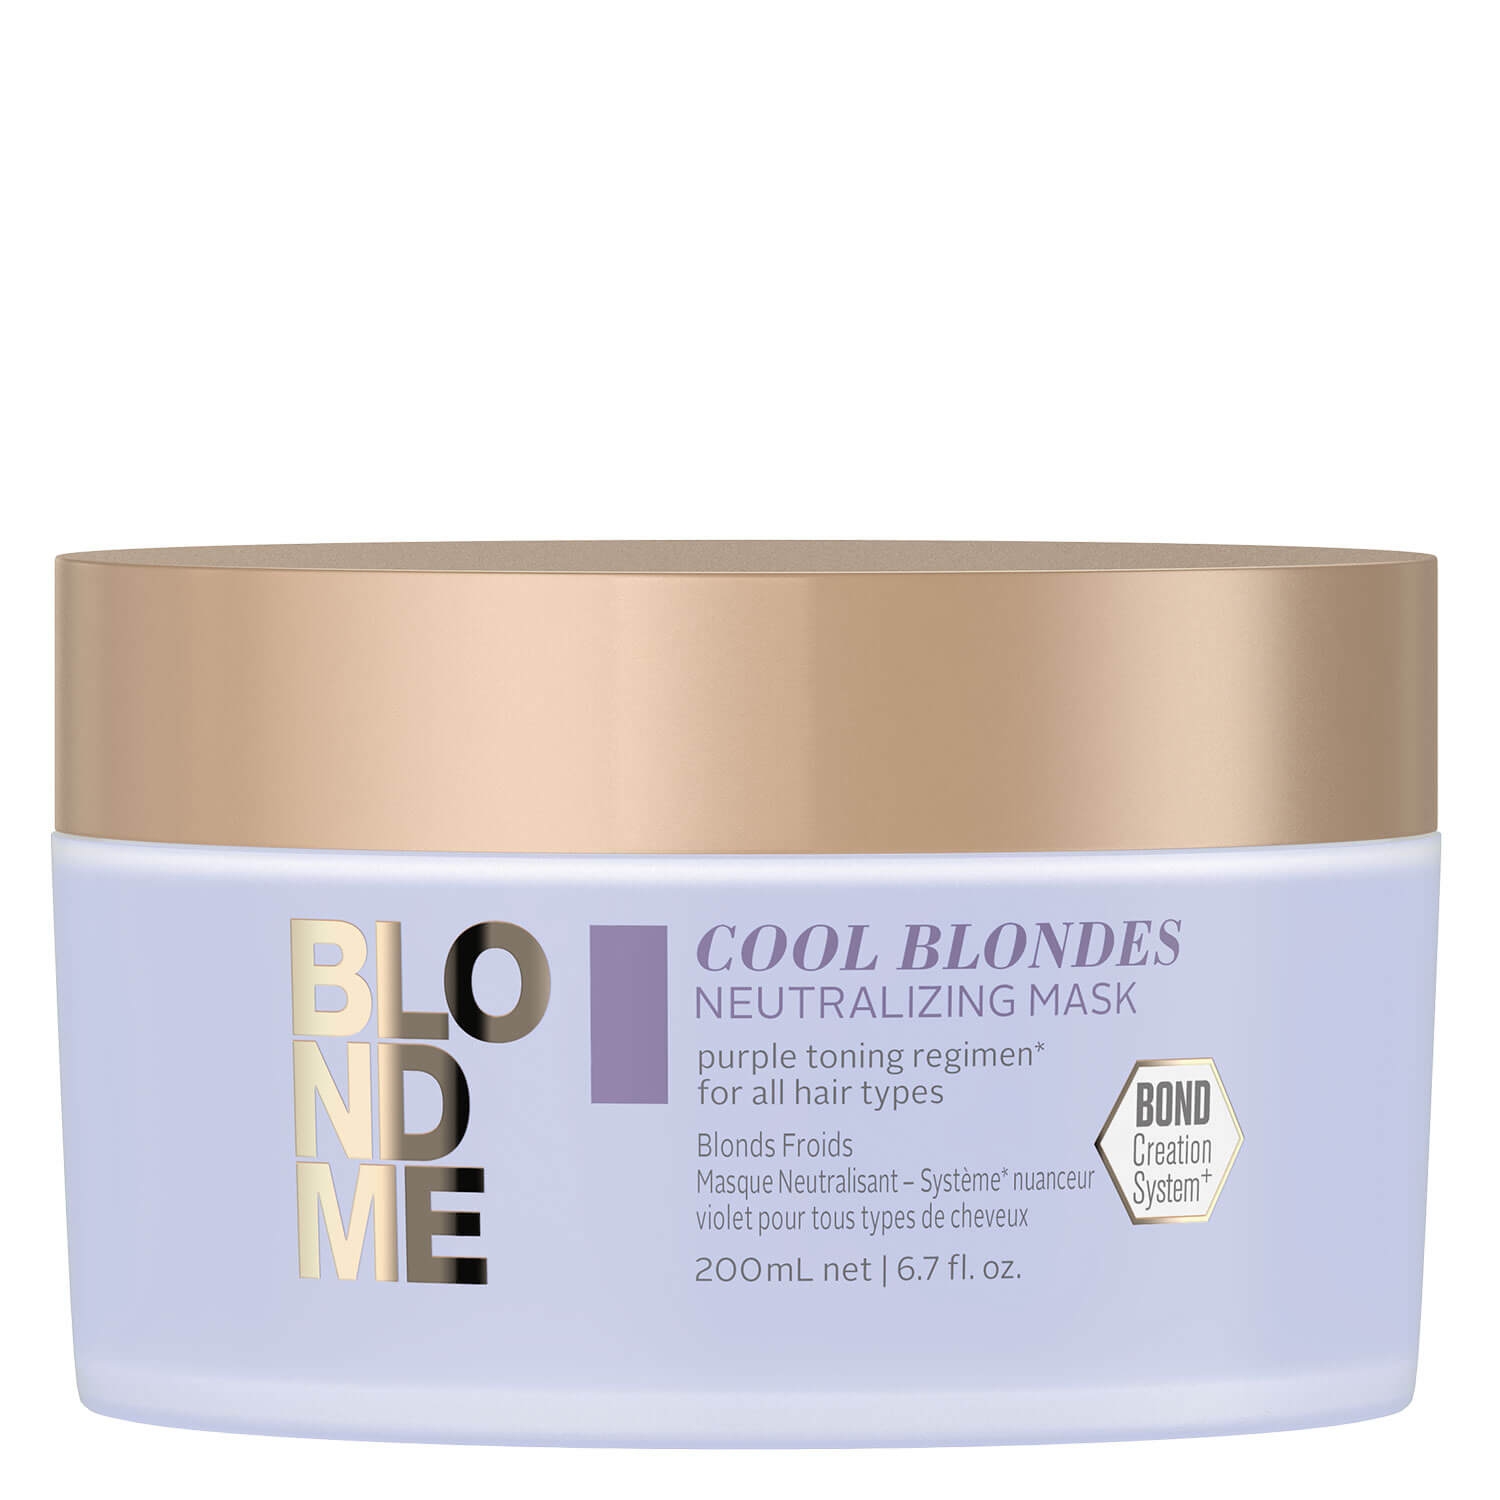 Produktbild von Blondme - Cool Blondes Neutralizing Mask